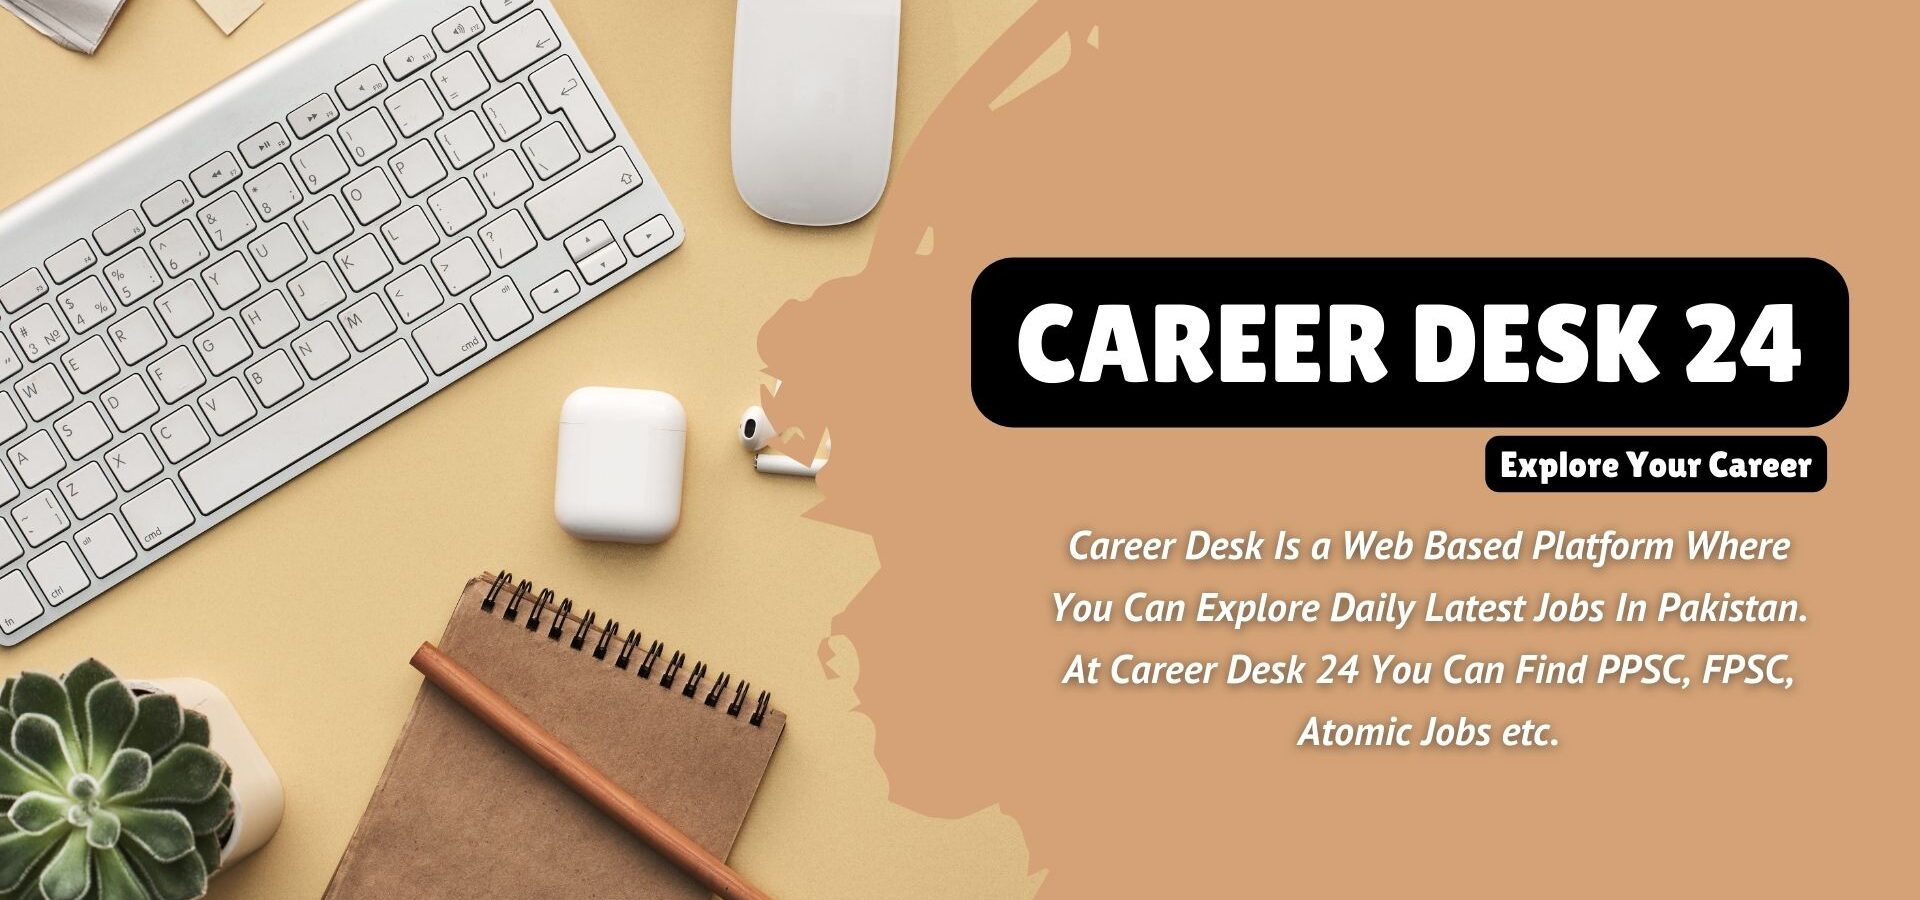 Career Desk 24